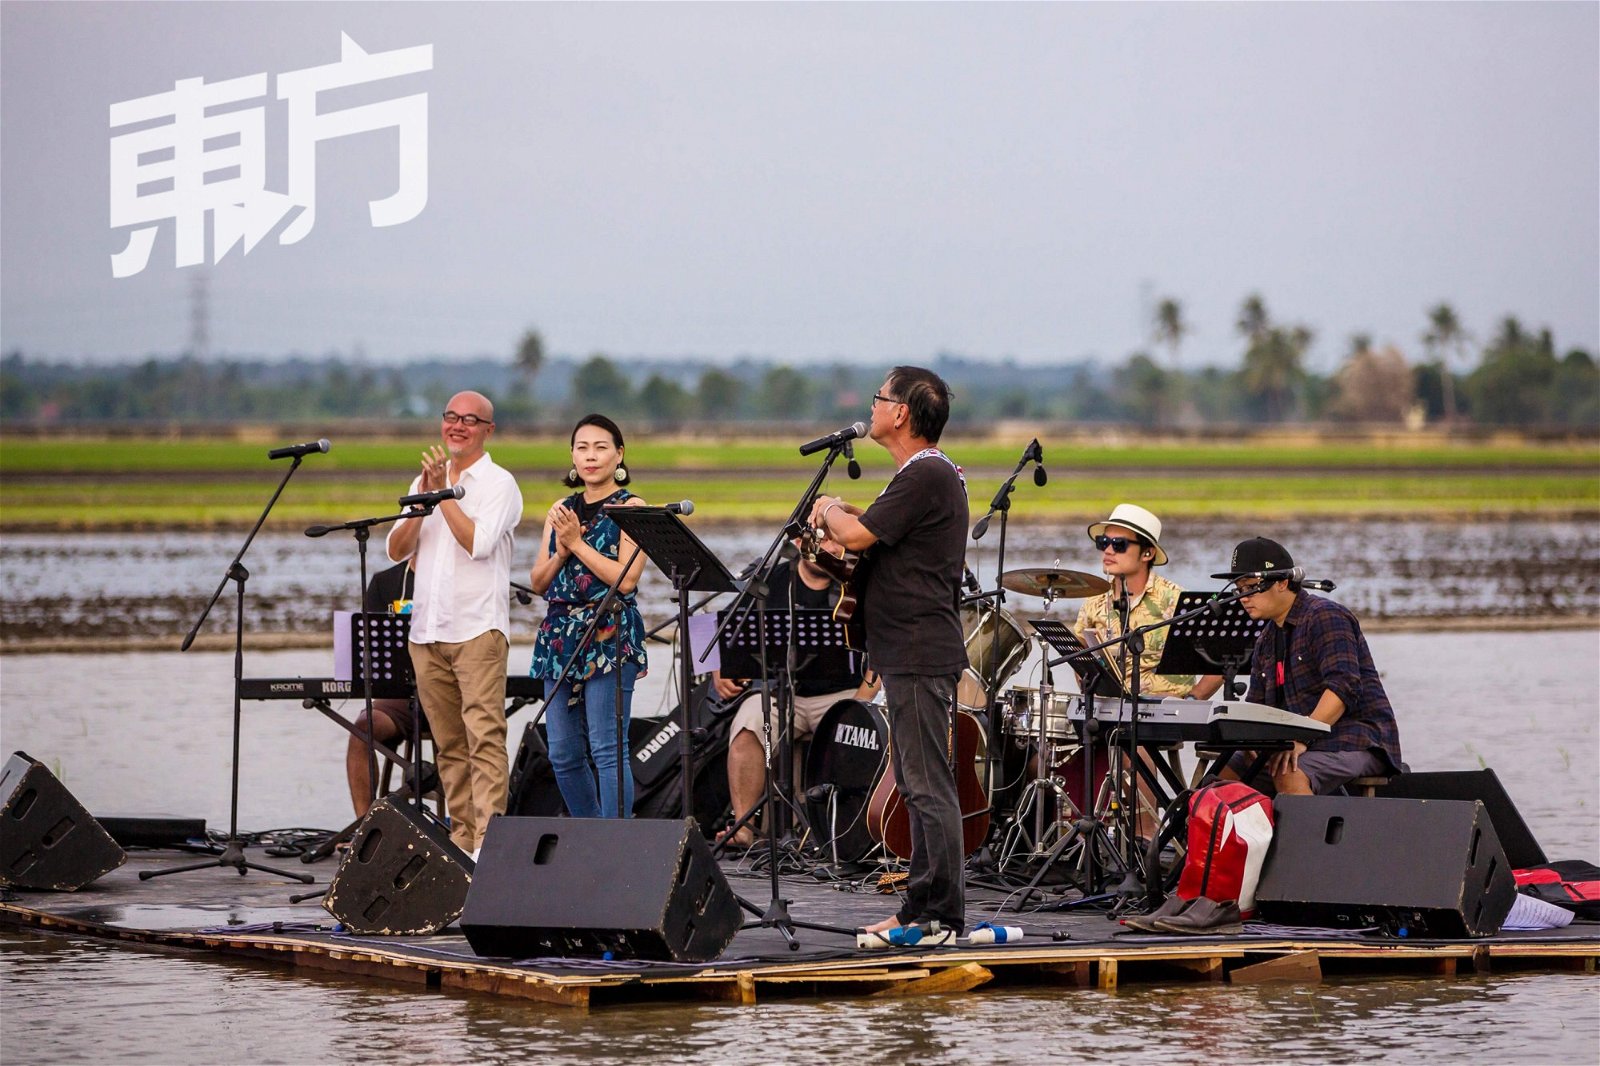 去年，稻海音乐节办了一场“测试版”。张盛德形容，就像是场老朋友的聚会，大家在一个美丽和自然的环境下，唱属于这个地方的歌。